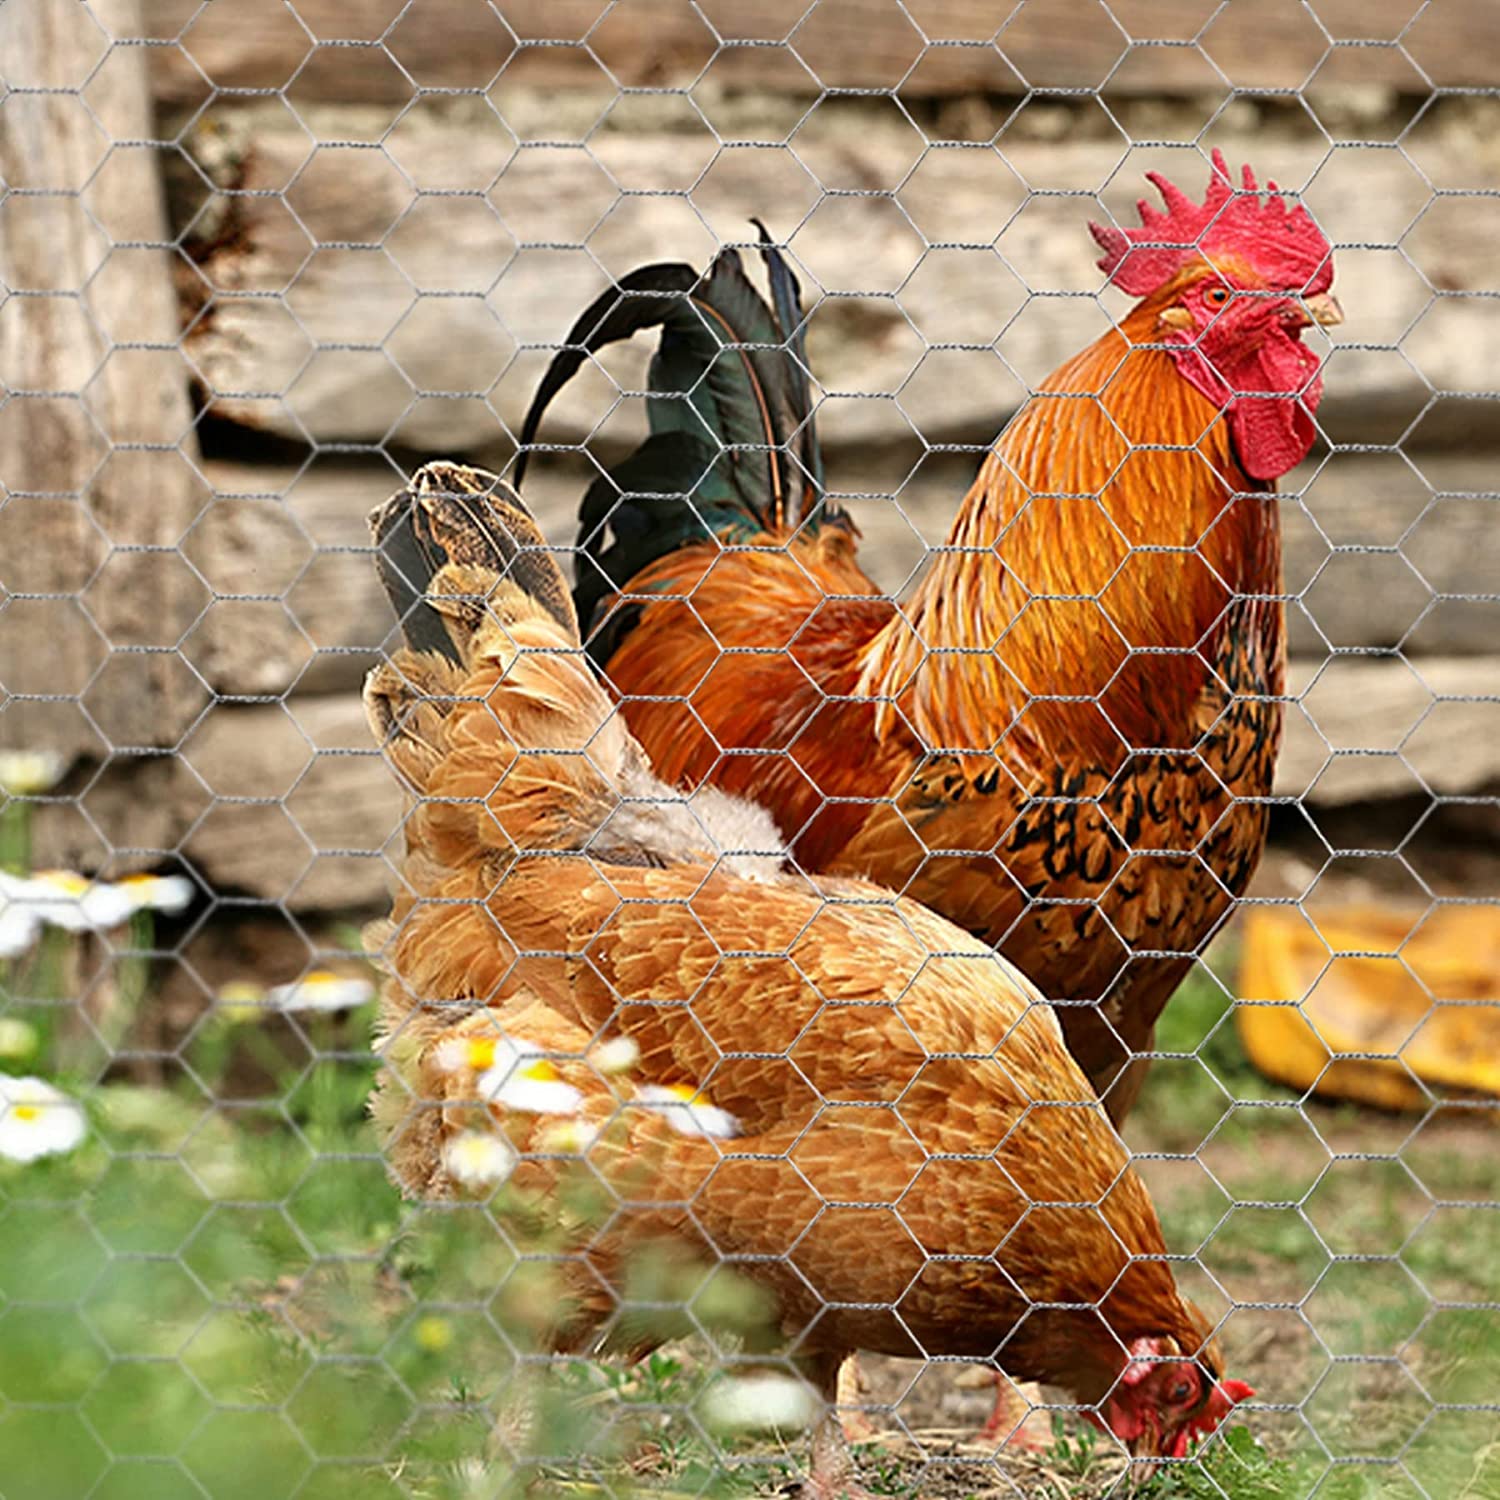 poultry net